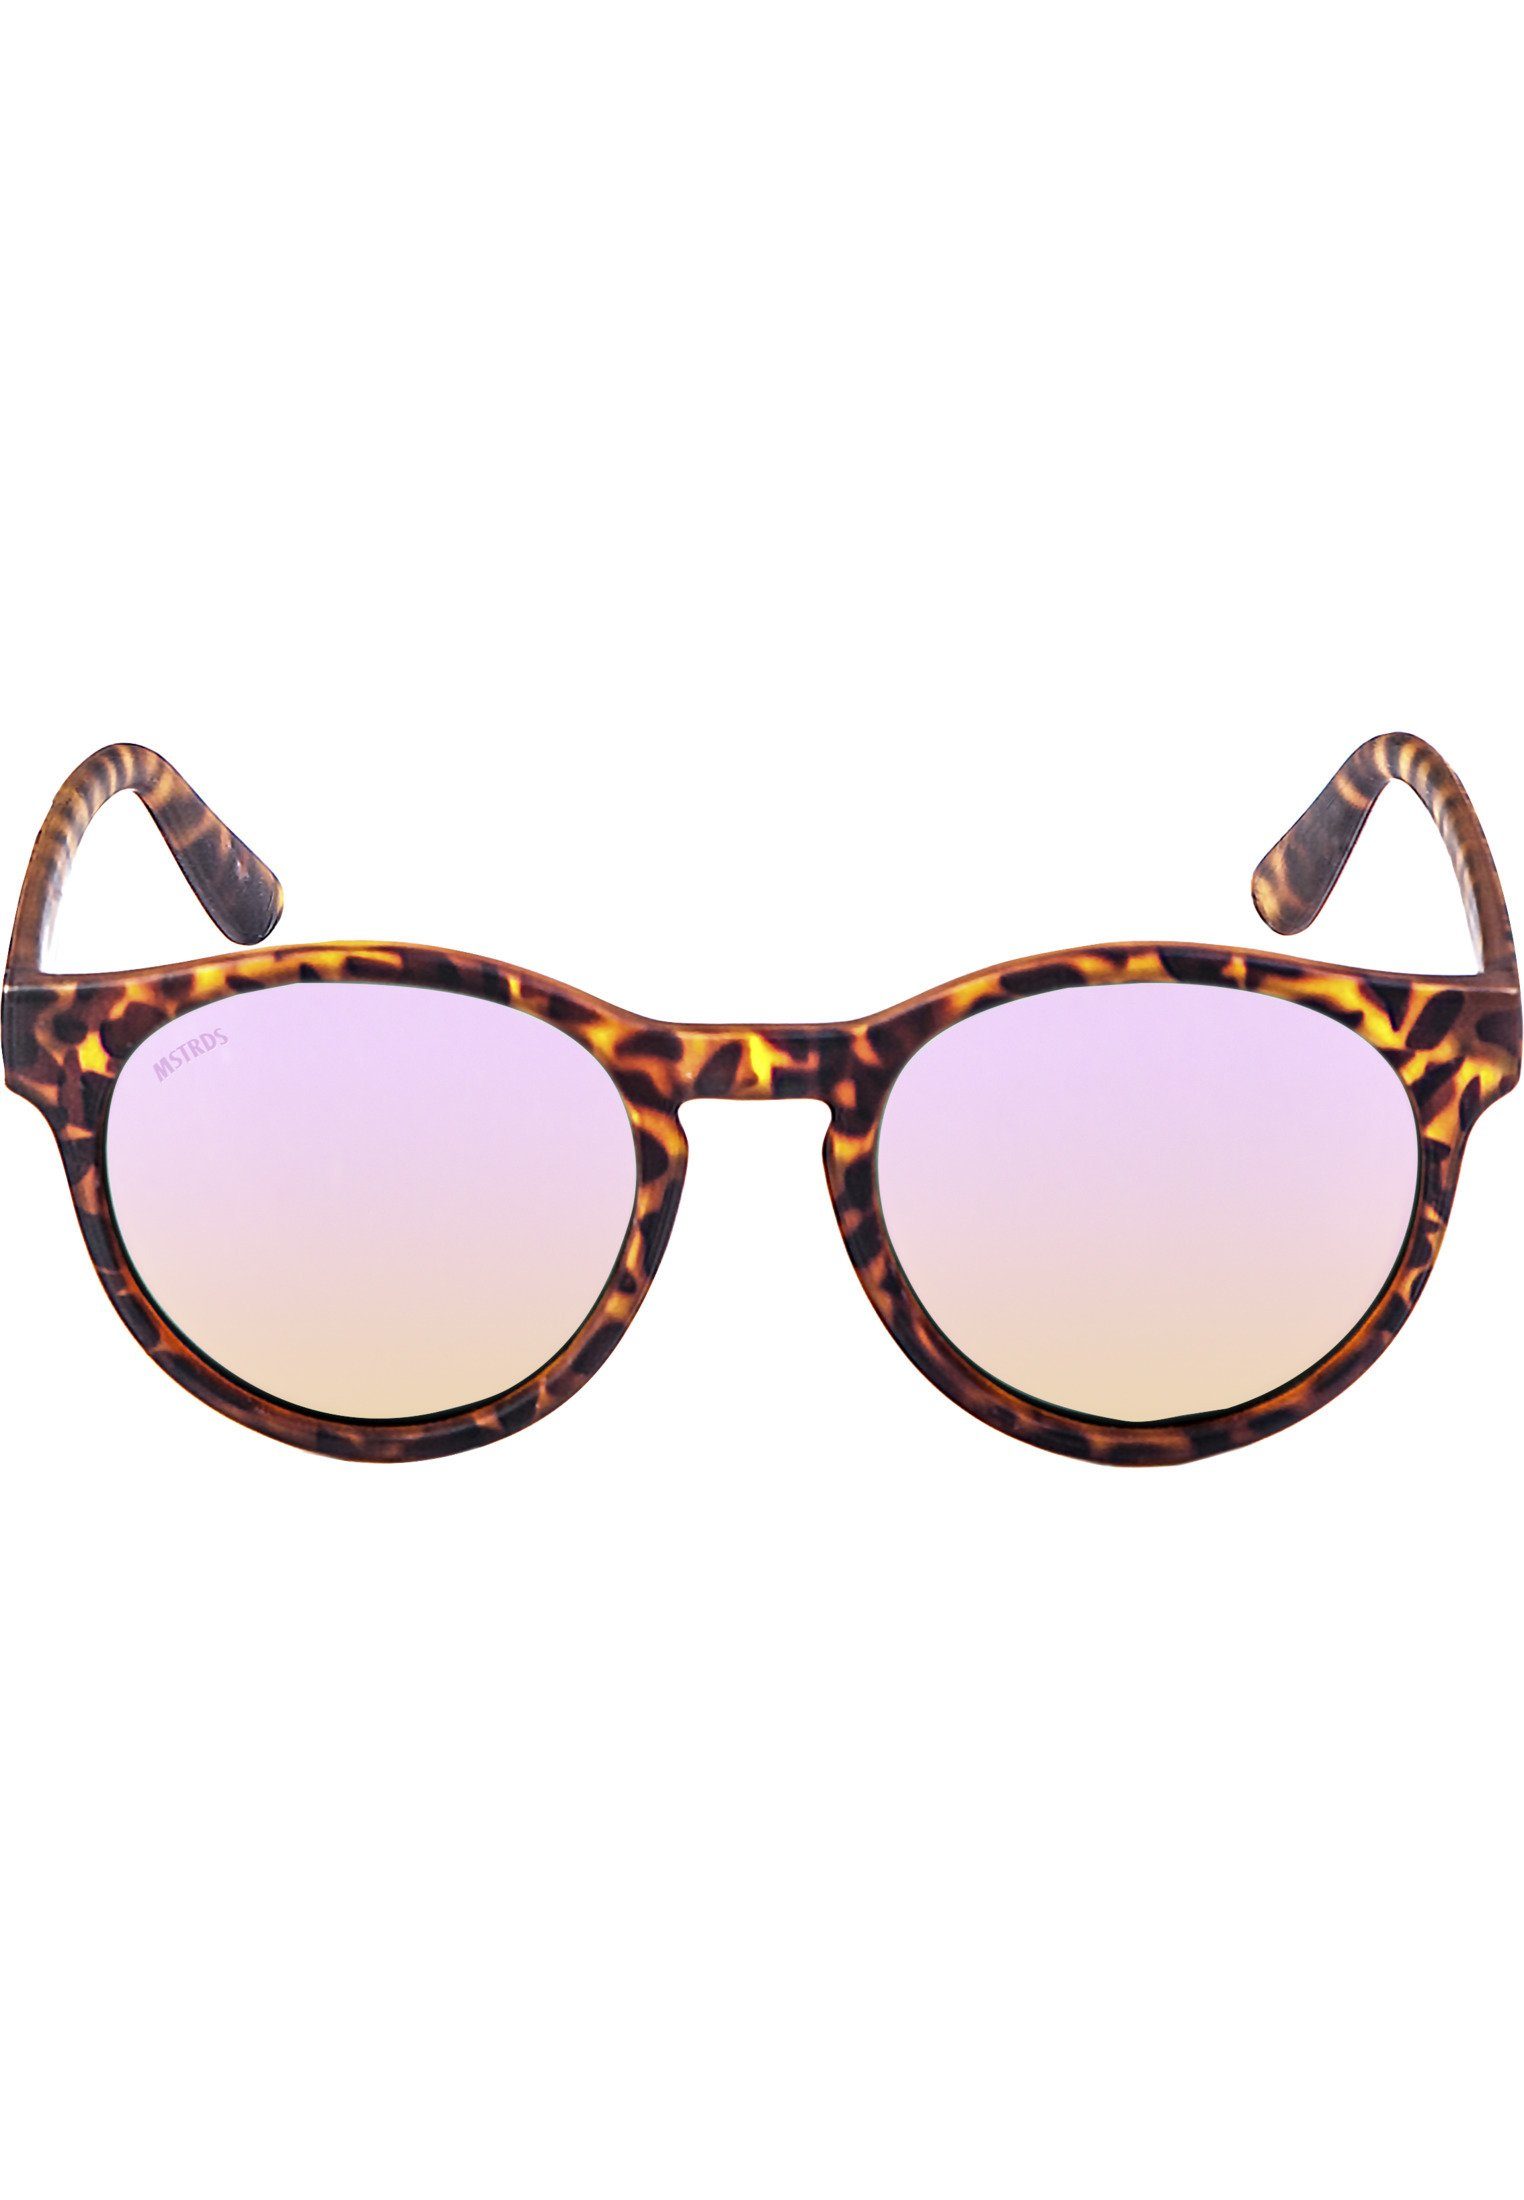 havanna/rosé Sonnenbrille Accessoires Sunrise Sunglasses MSTRDS